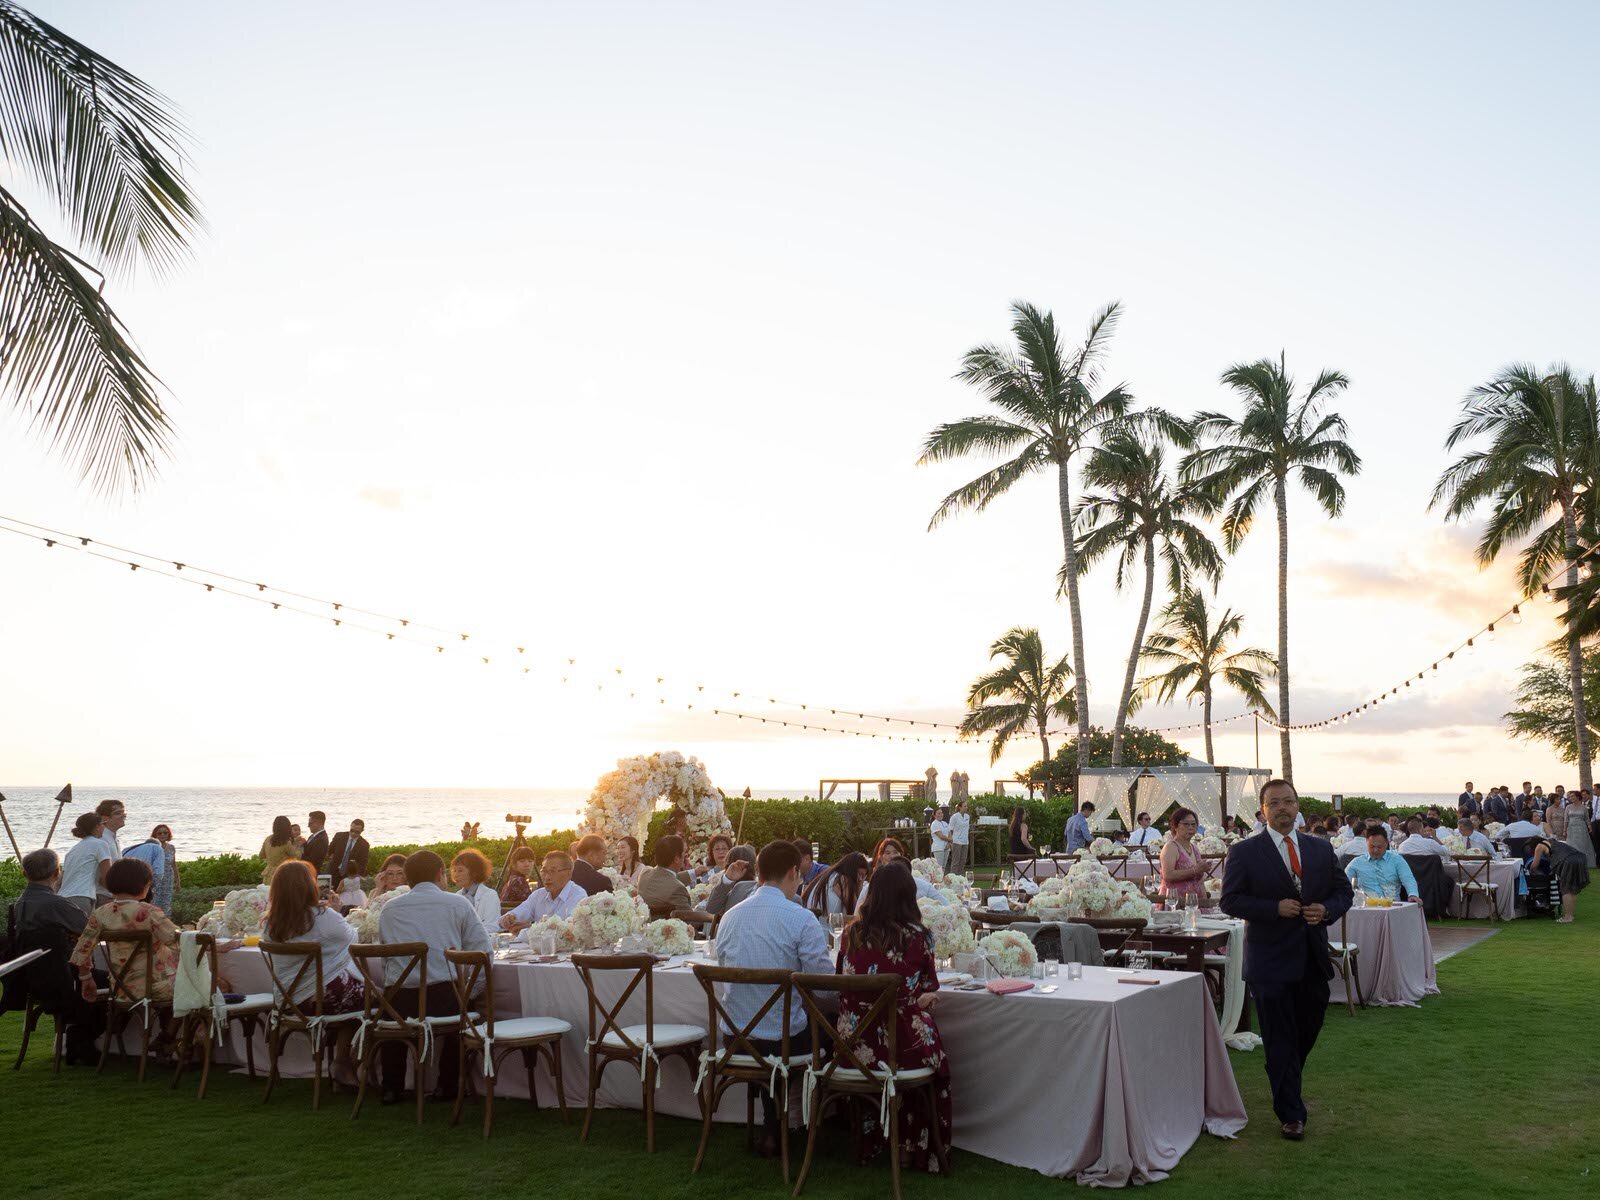 Four Seasons Oahu Ocean Lawn Wedding Venue on Oahu Hawaii-4.jpg